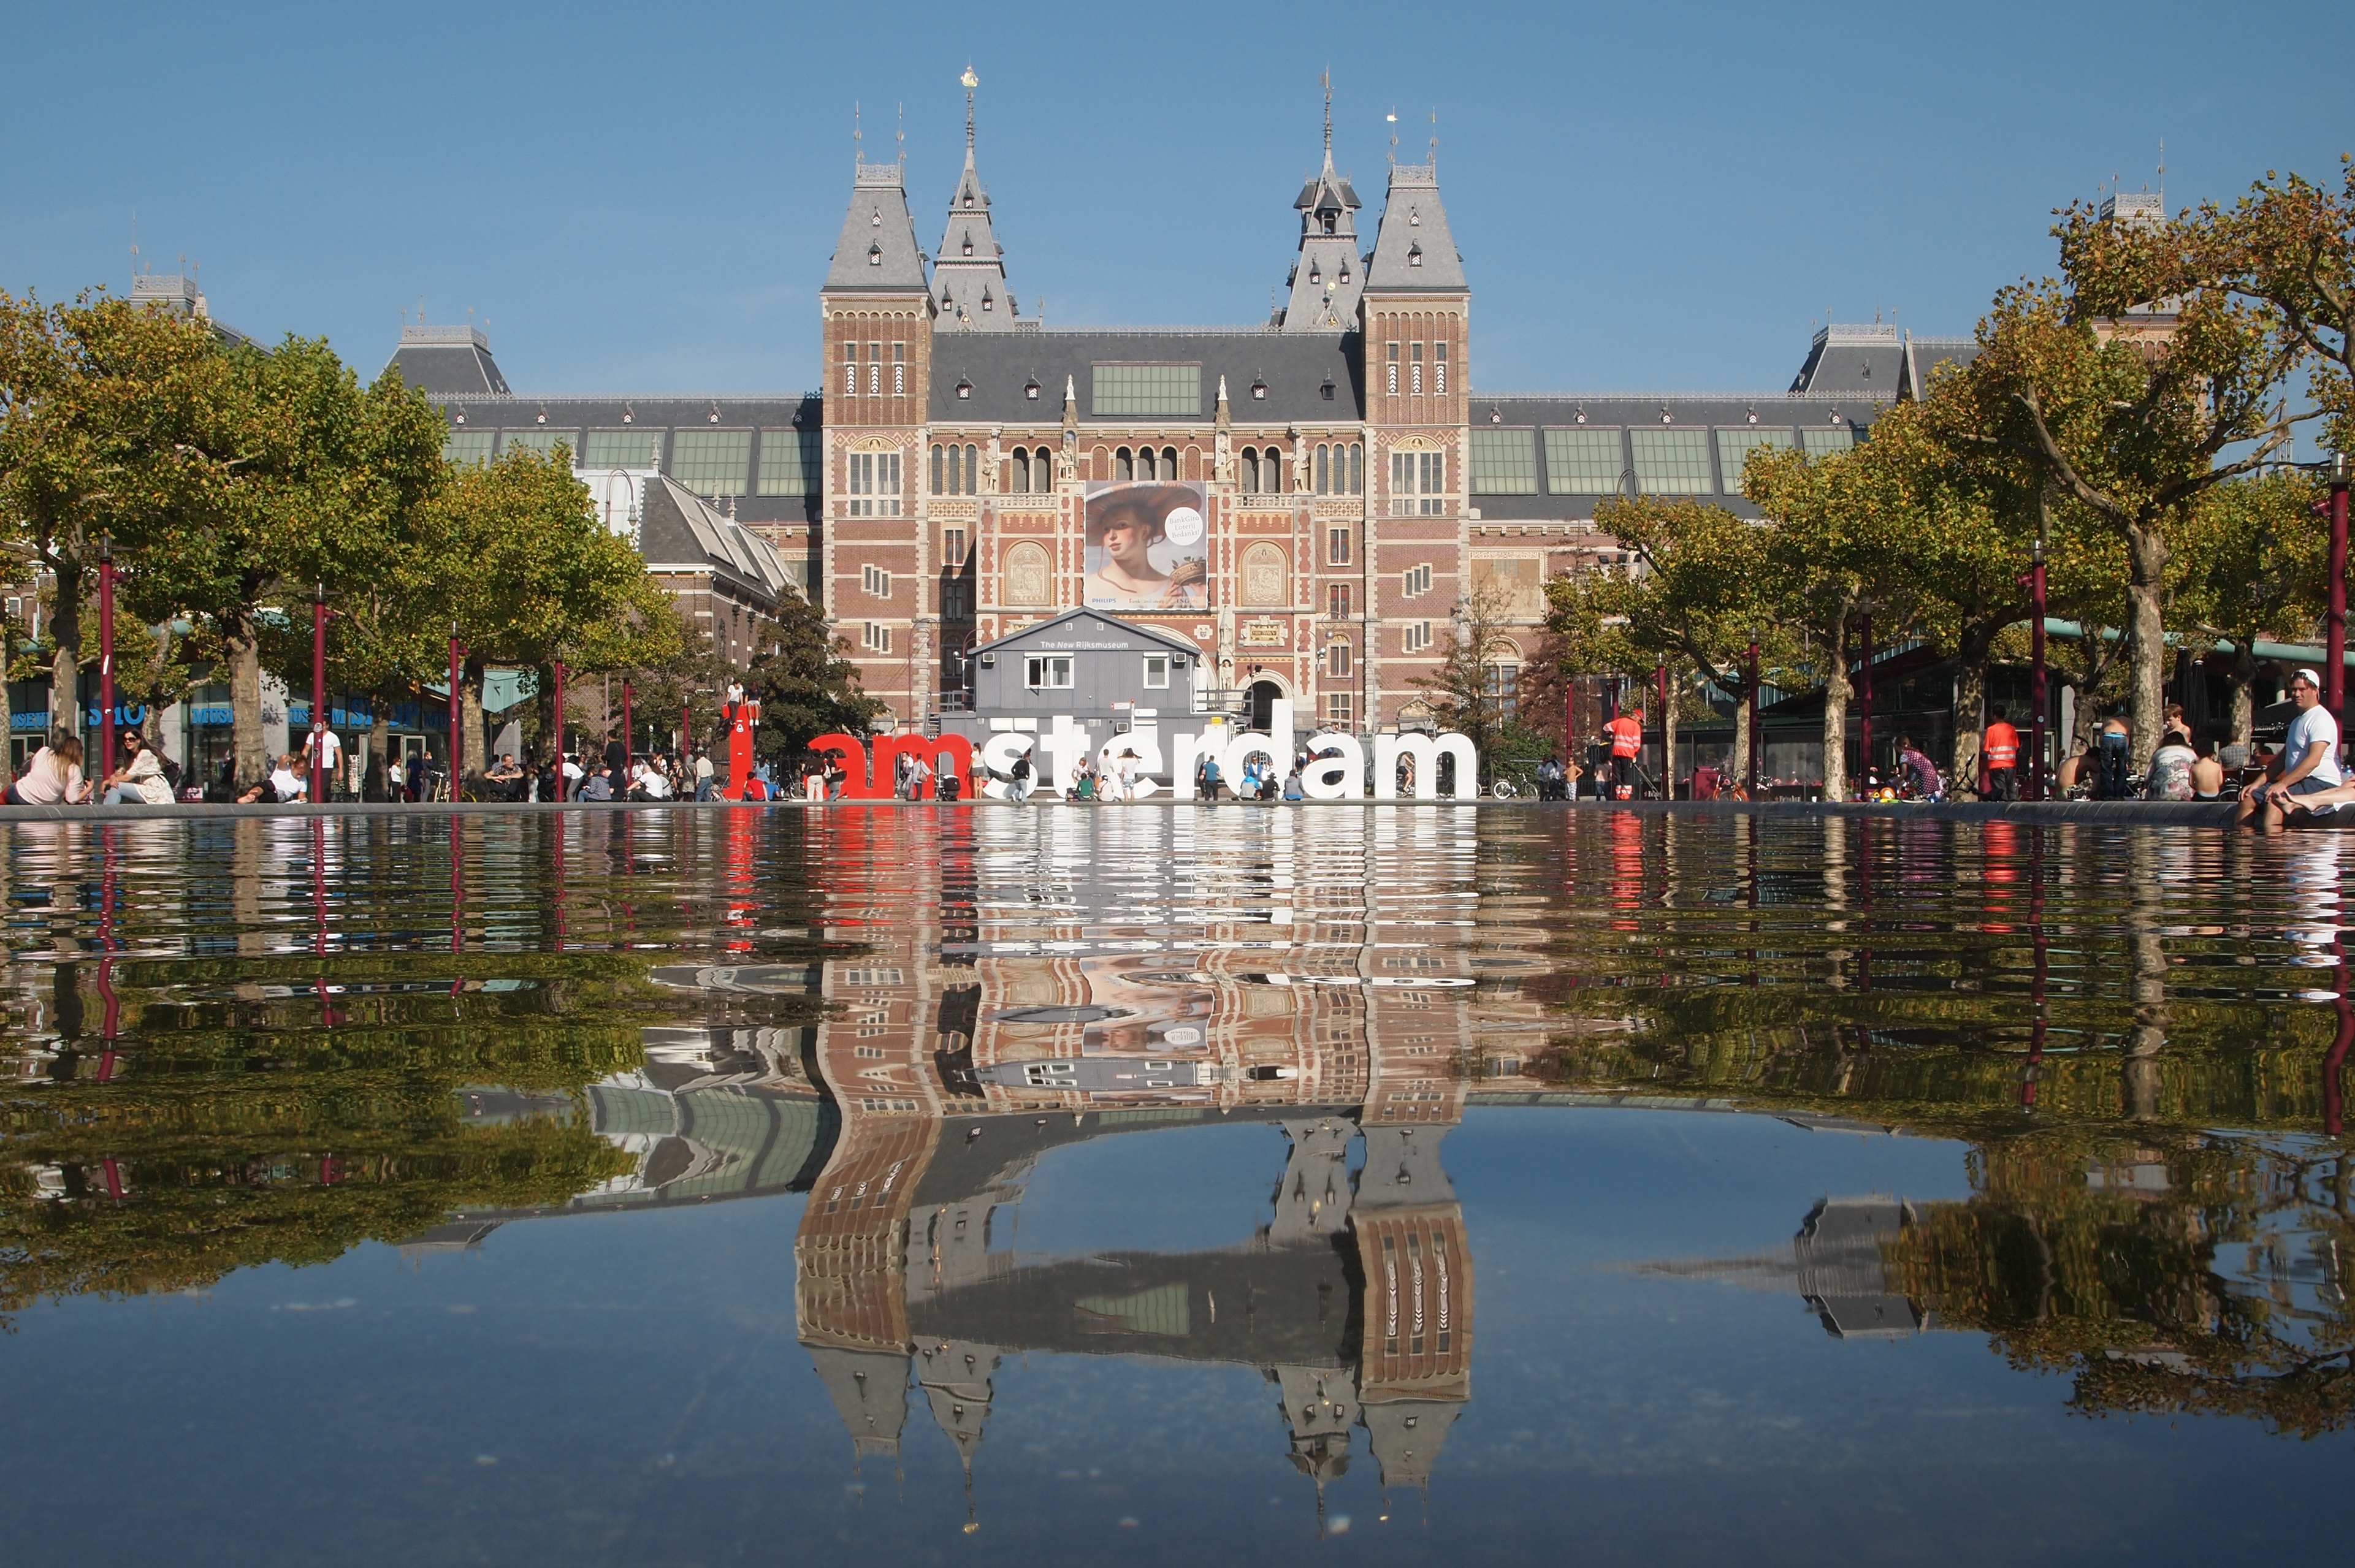 Rijksmuseum IAmsterdam